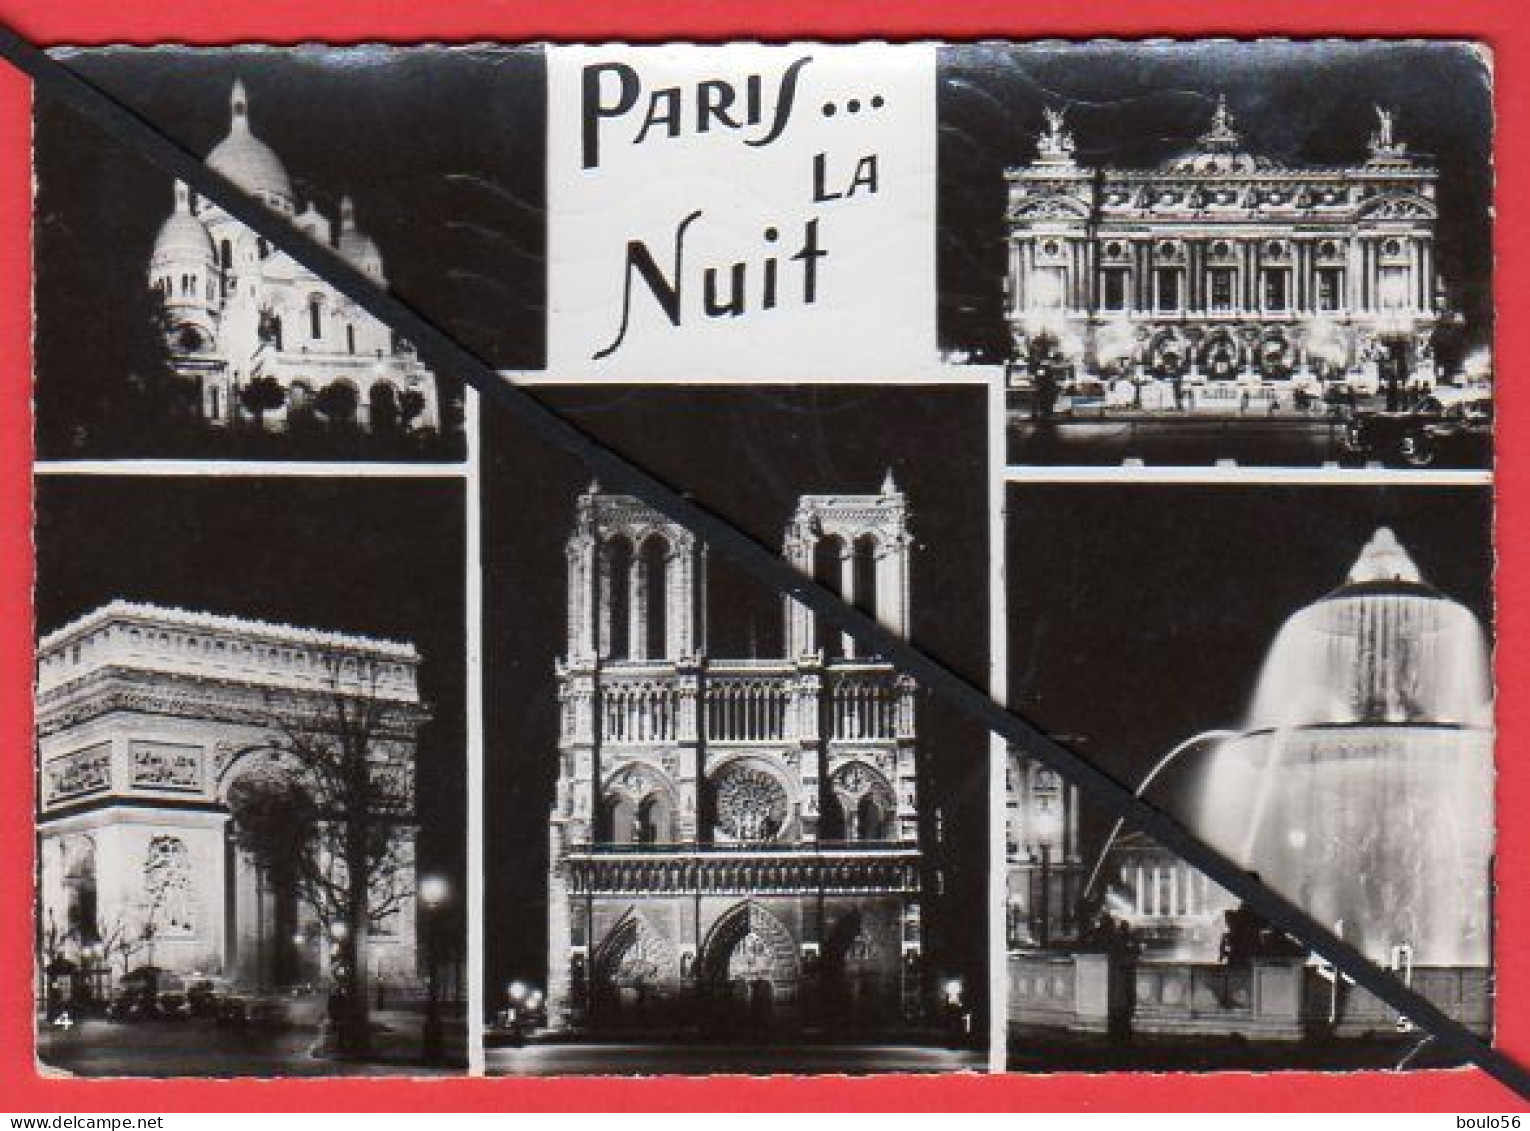 CPSM-(Lots -Vrac)5-99-9Cartes-PARIS-la Tour EFFEL-1956-Monmartre Pl du Tertre-1955.-Paris la Nuit.1957."1964.-1963.-----